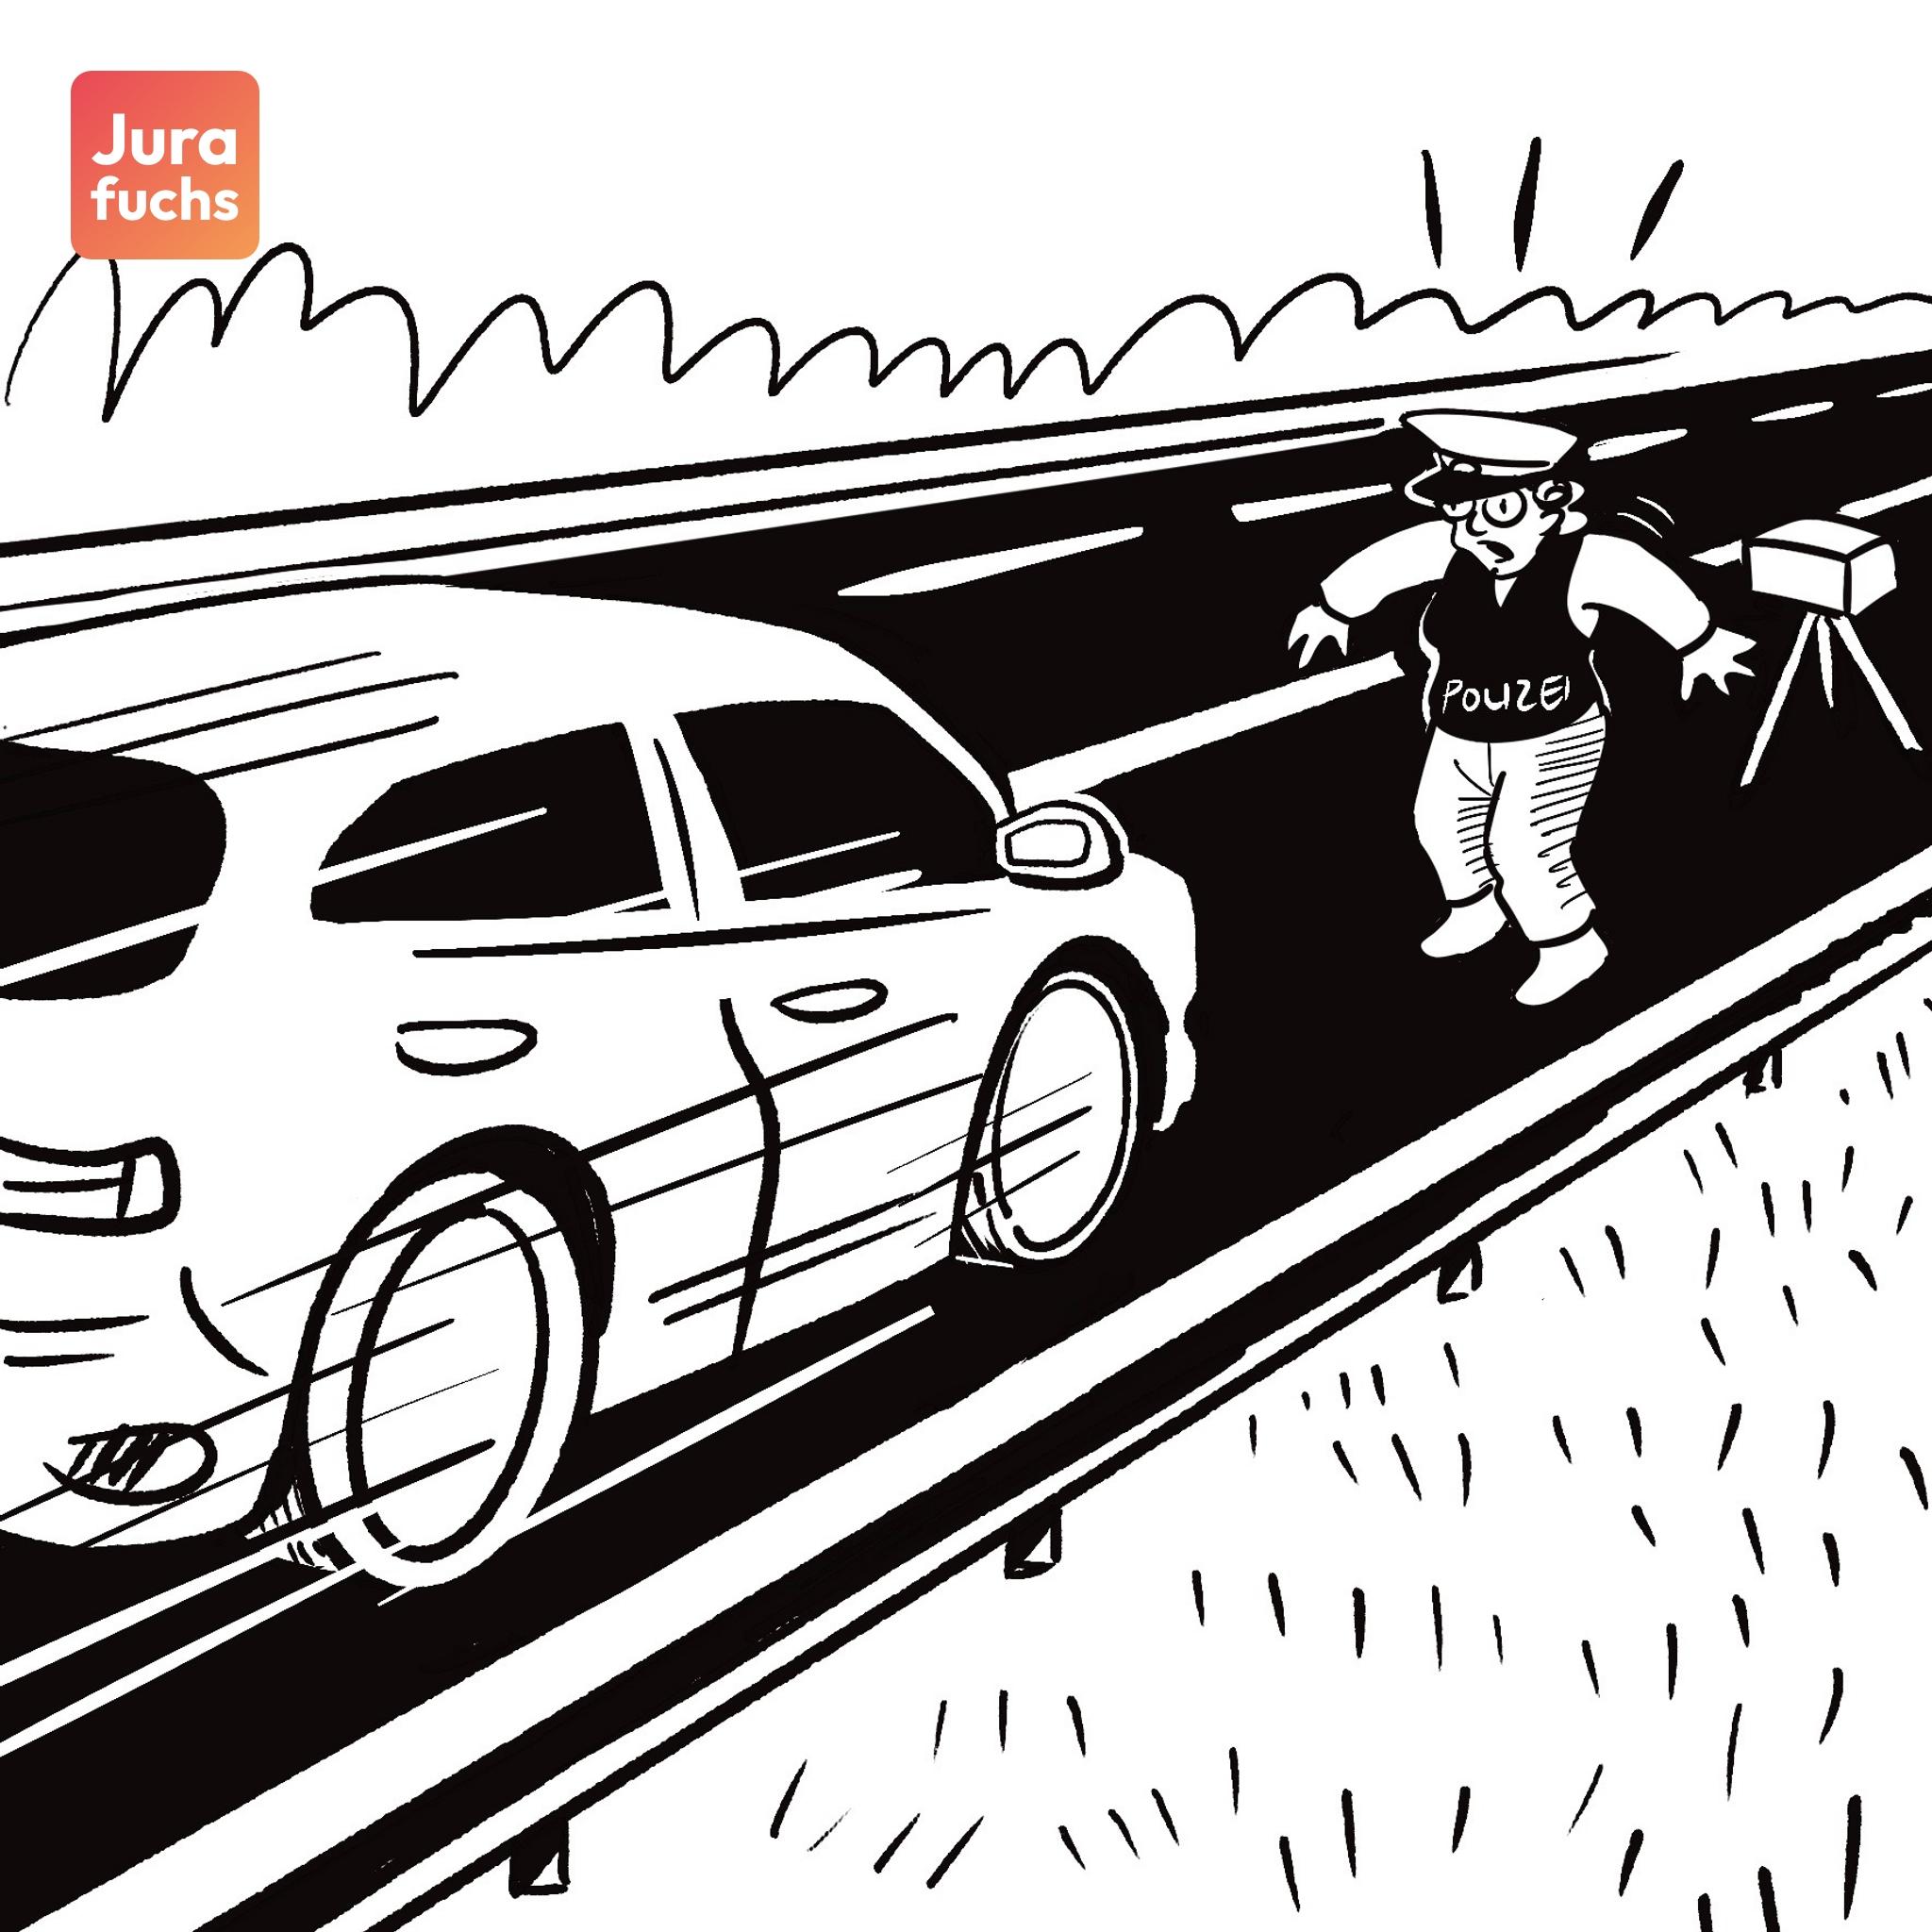 Jurafuchs Illustration: R rast in ihrem Auto auf Polizisten P zu, die gerade auf dem Seitenstreifen eine Radarkontrolle durchführt. 